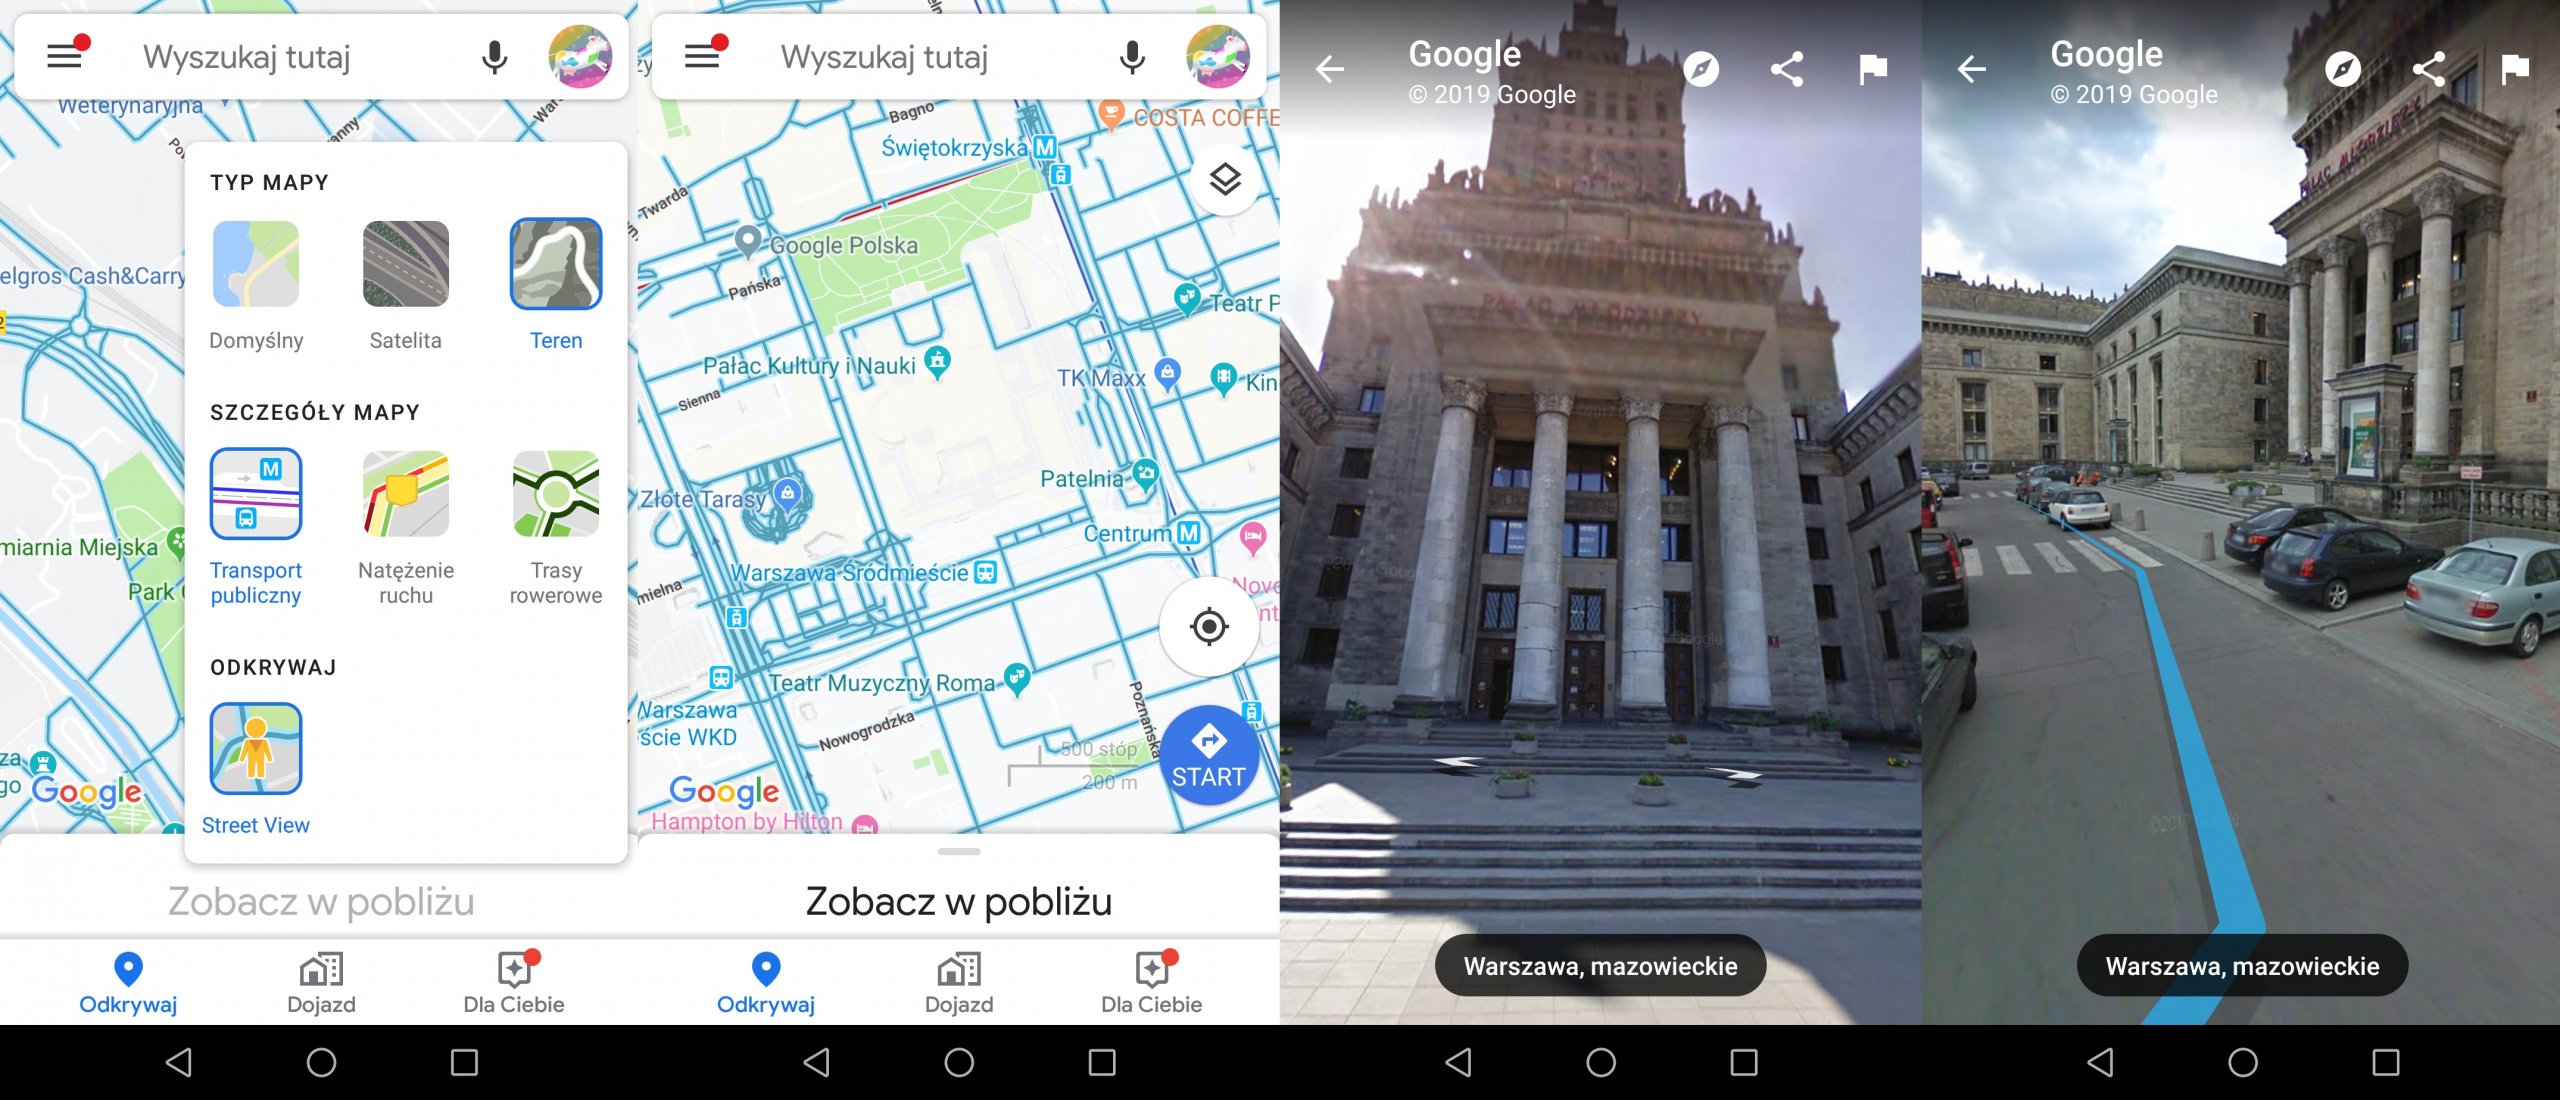 Spieszmy się kochać aplikacje Google. Street View idzie do kosza